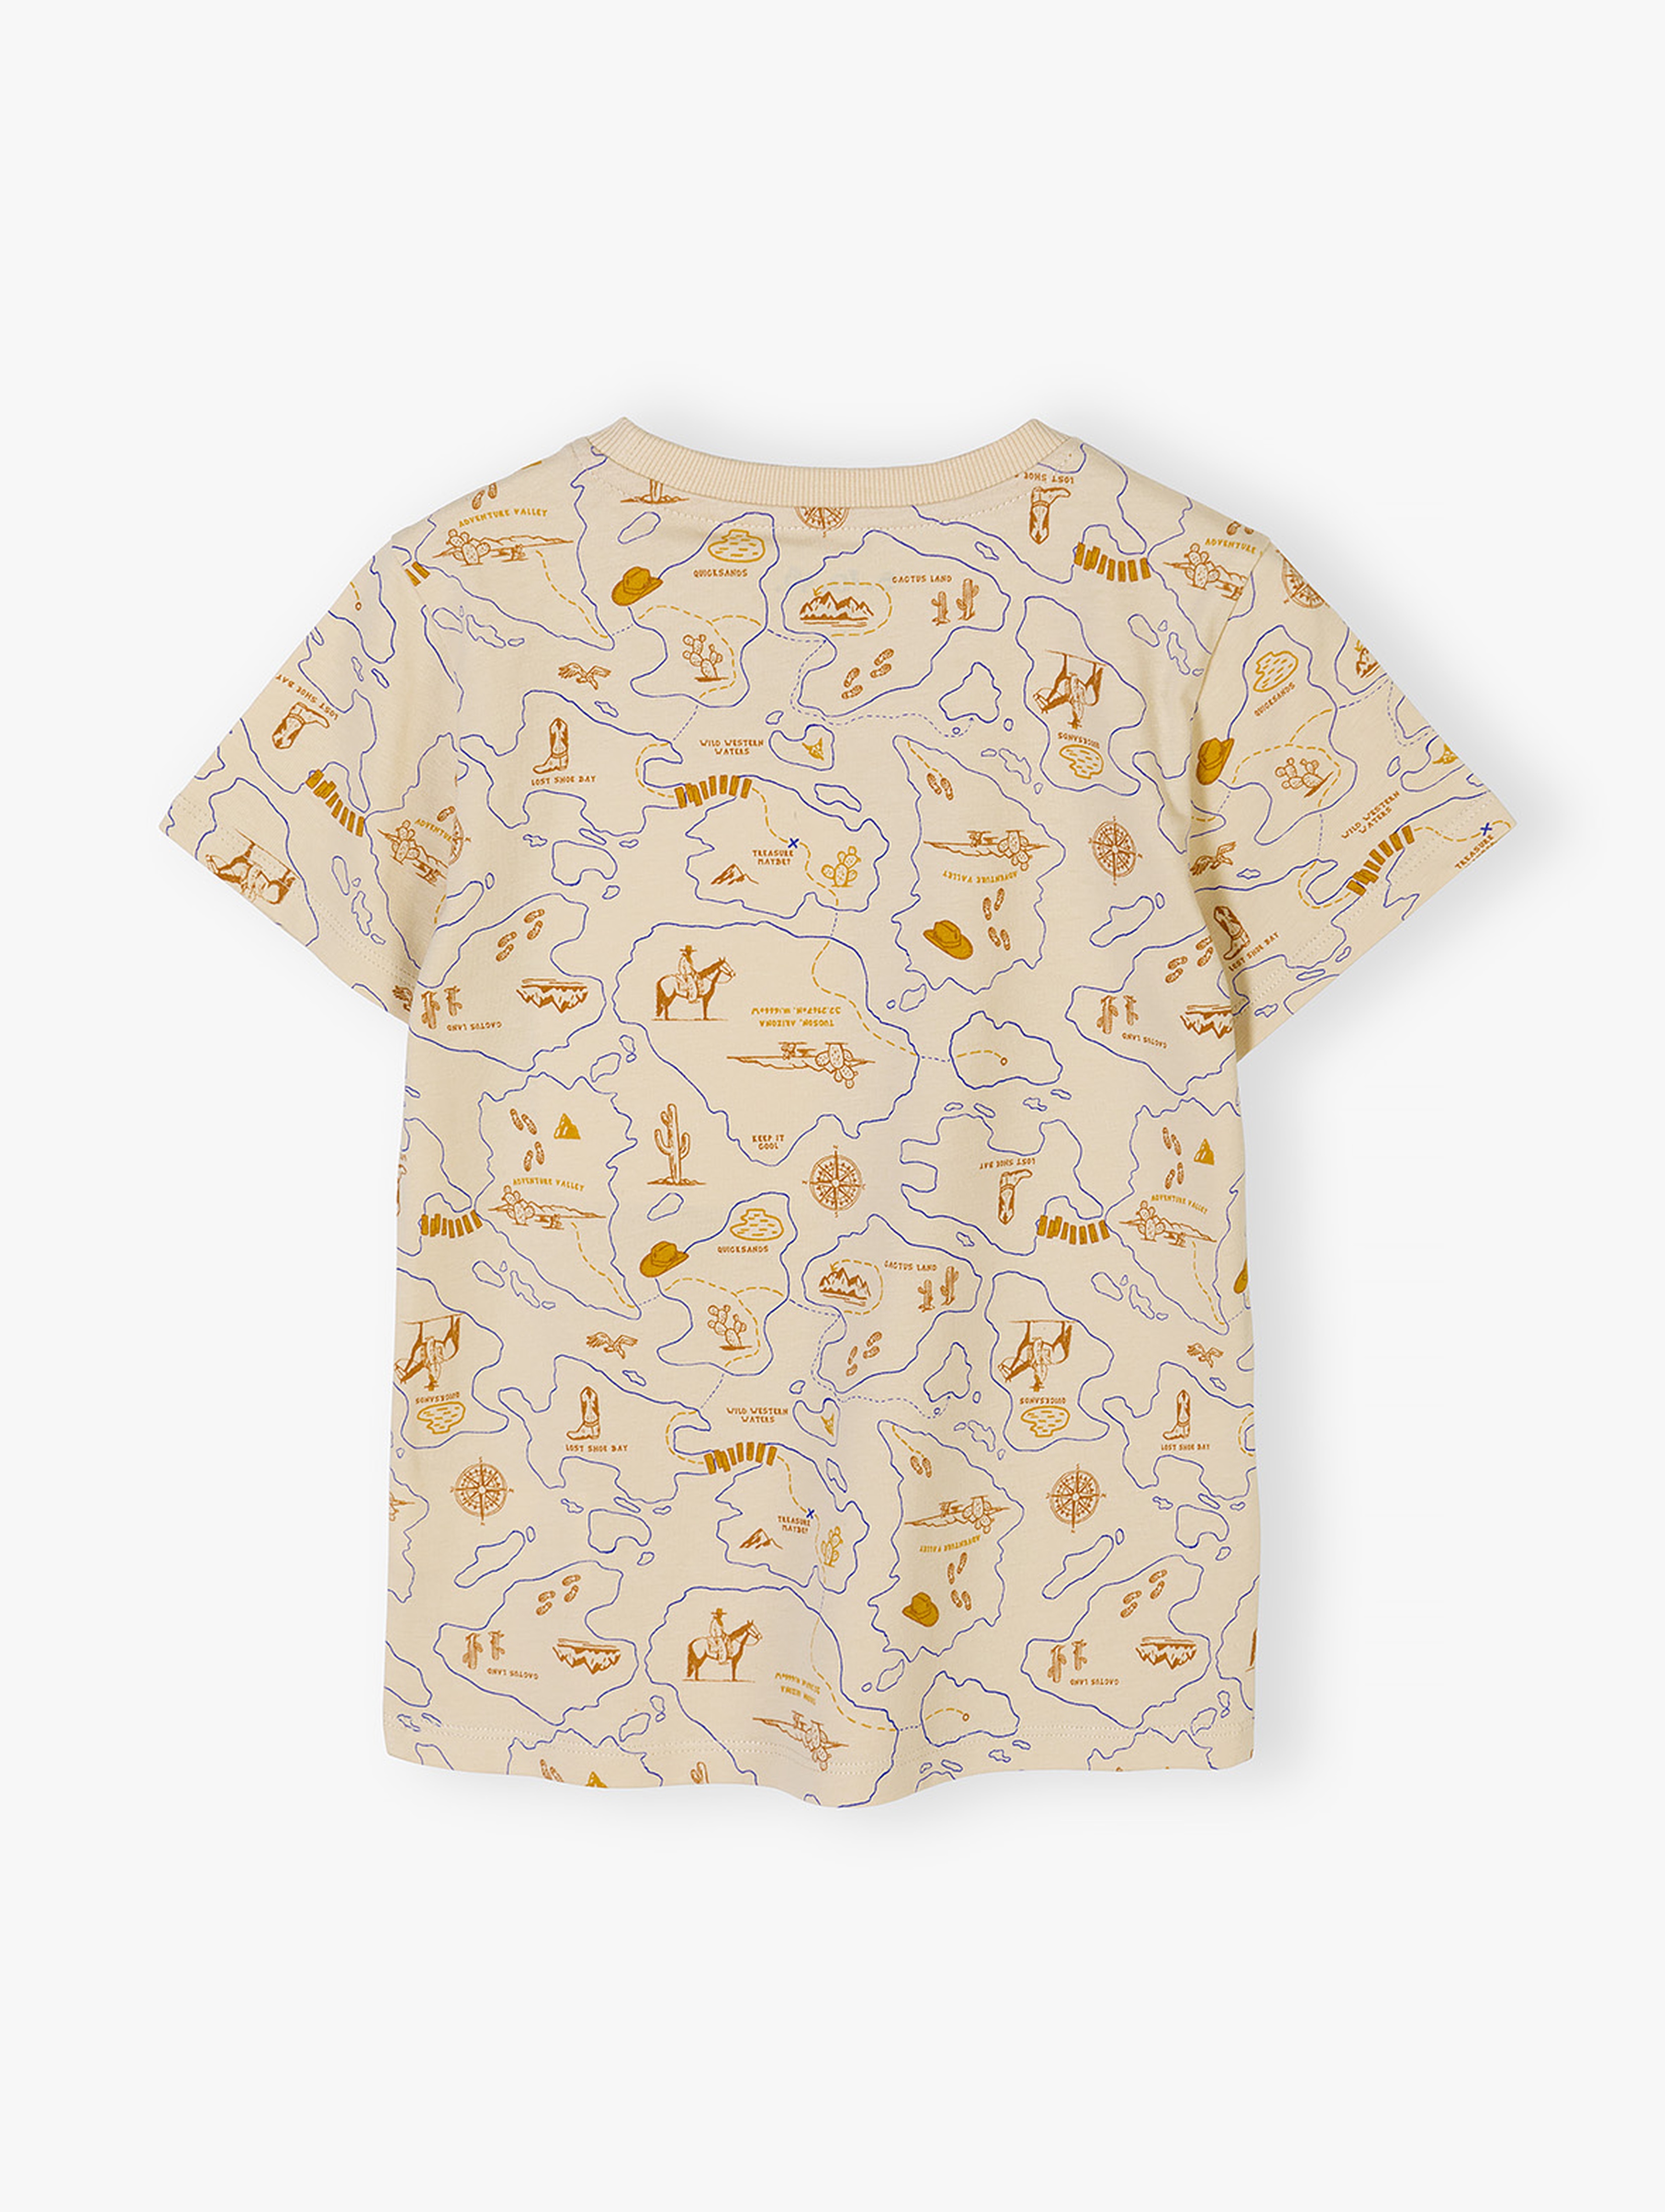 Beżowy bawełniany t-shirt dla chłopca z nadrukiem mapy